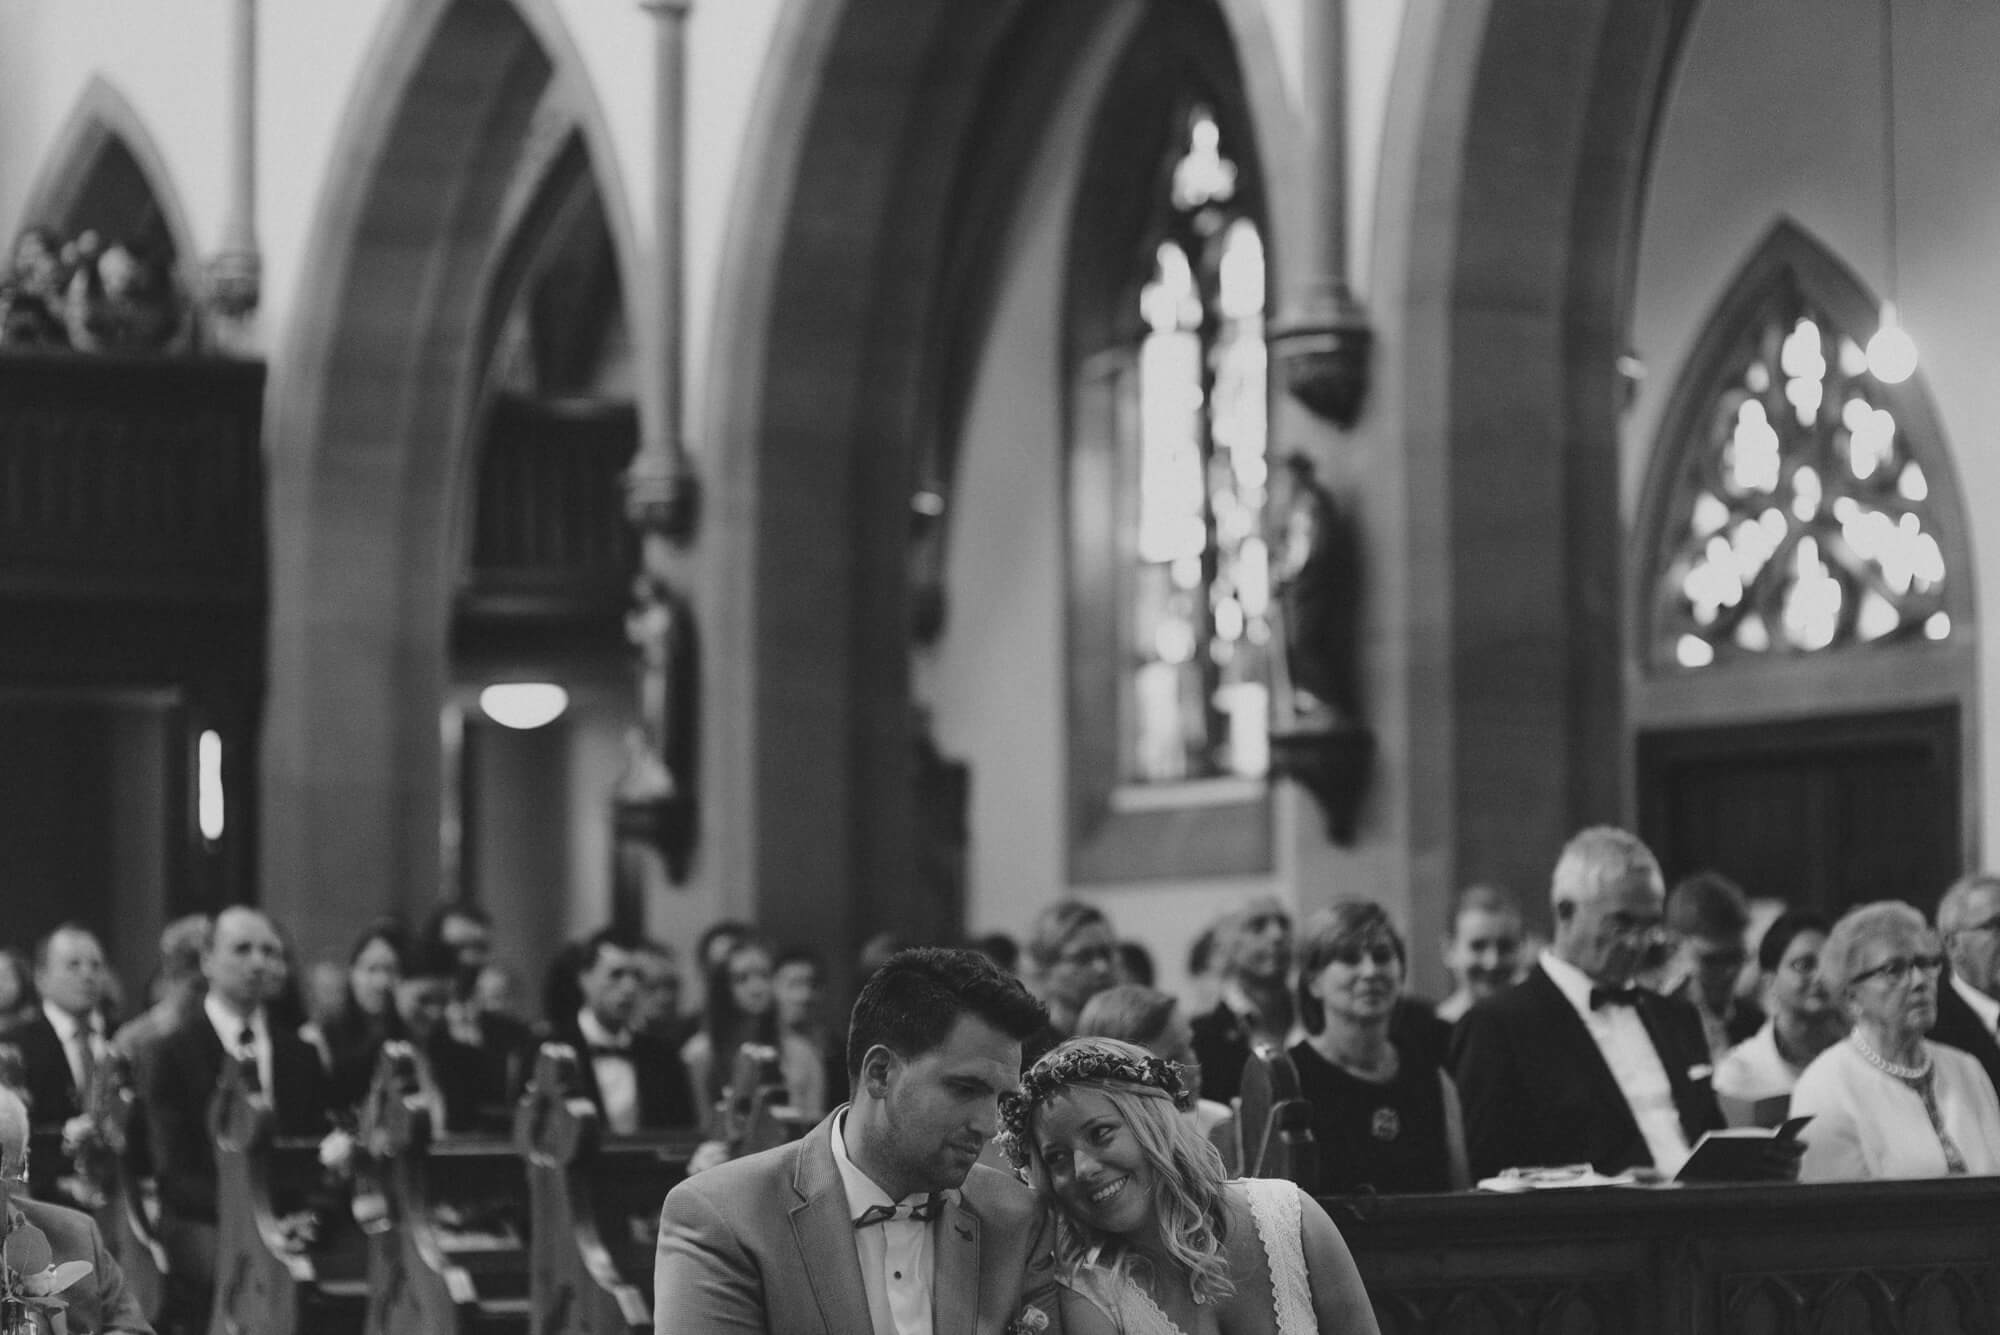 Brautpaar offspace während kirchlicher Trauung